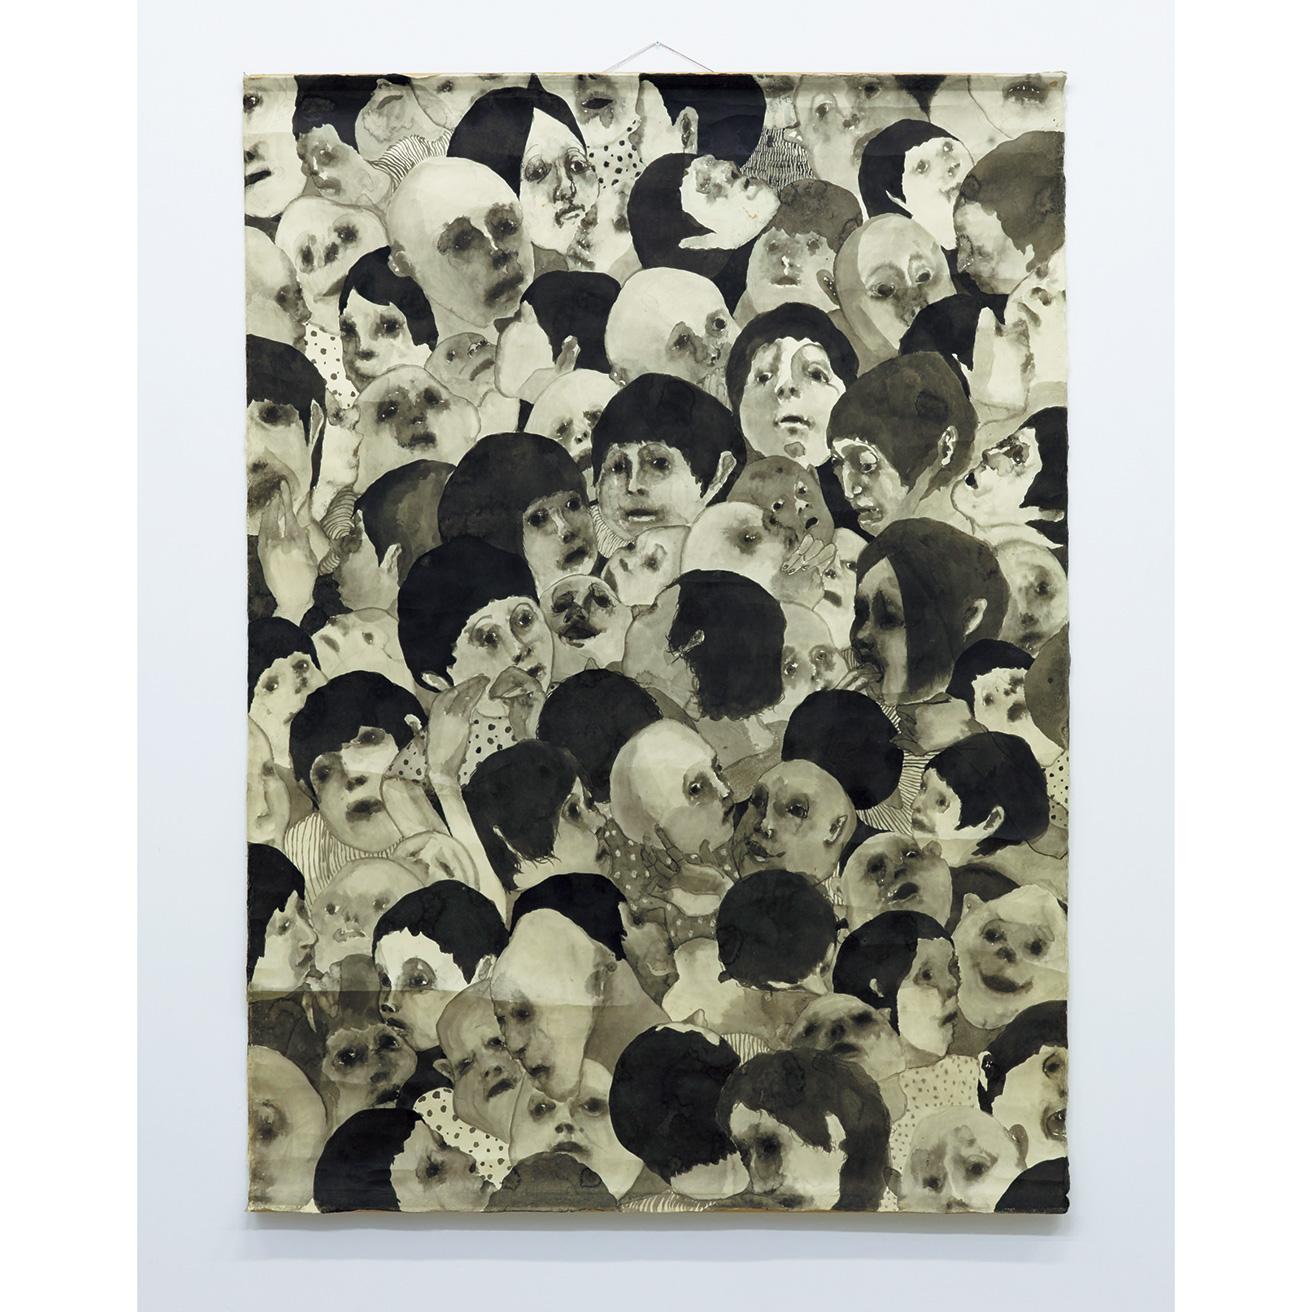 《ポスト人間》（2007年）。鎌倉の美大予備校に在籍していた高校3年生の時に制作した作品。(c) Koji Nakazono, Nakazono Family ; courtesy Tomio Koyama Gallery